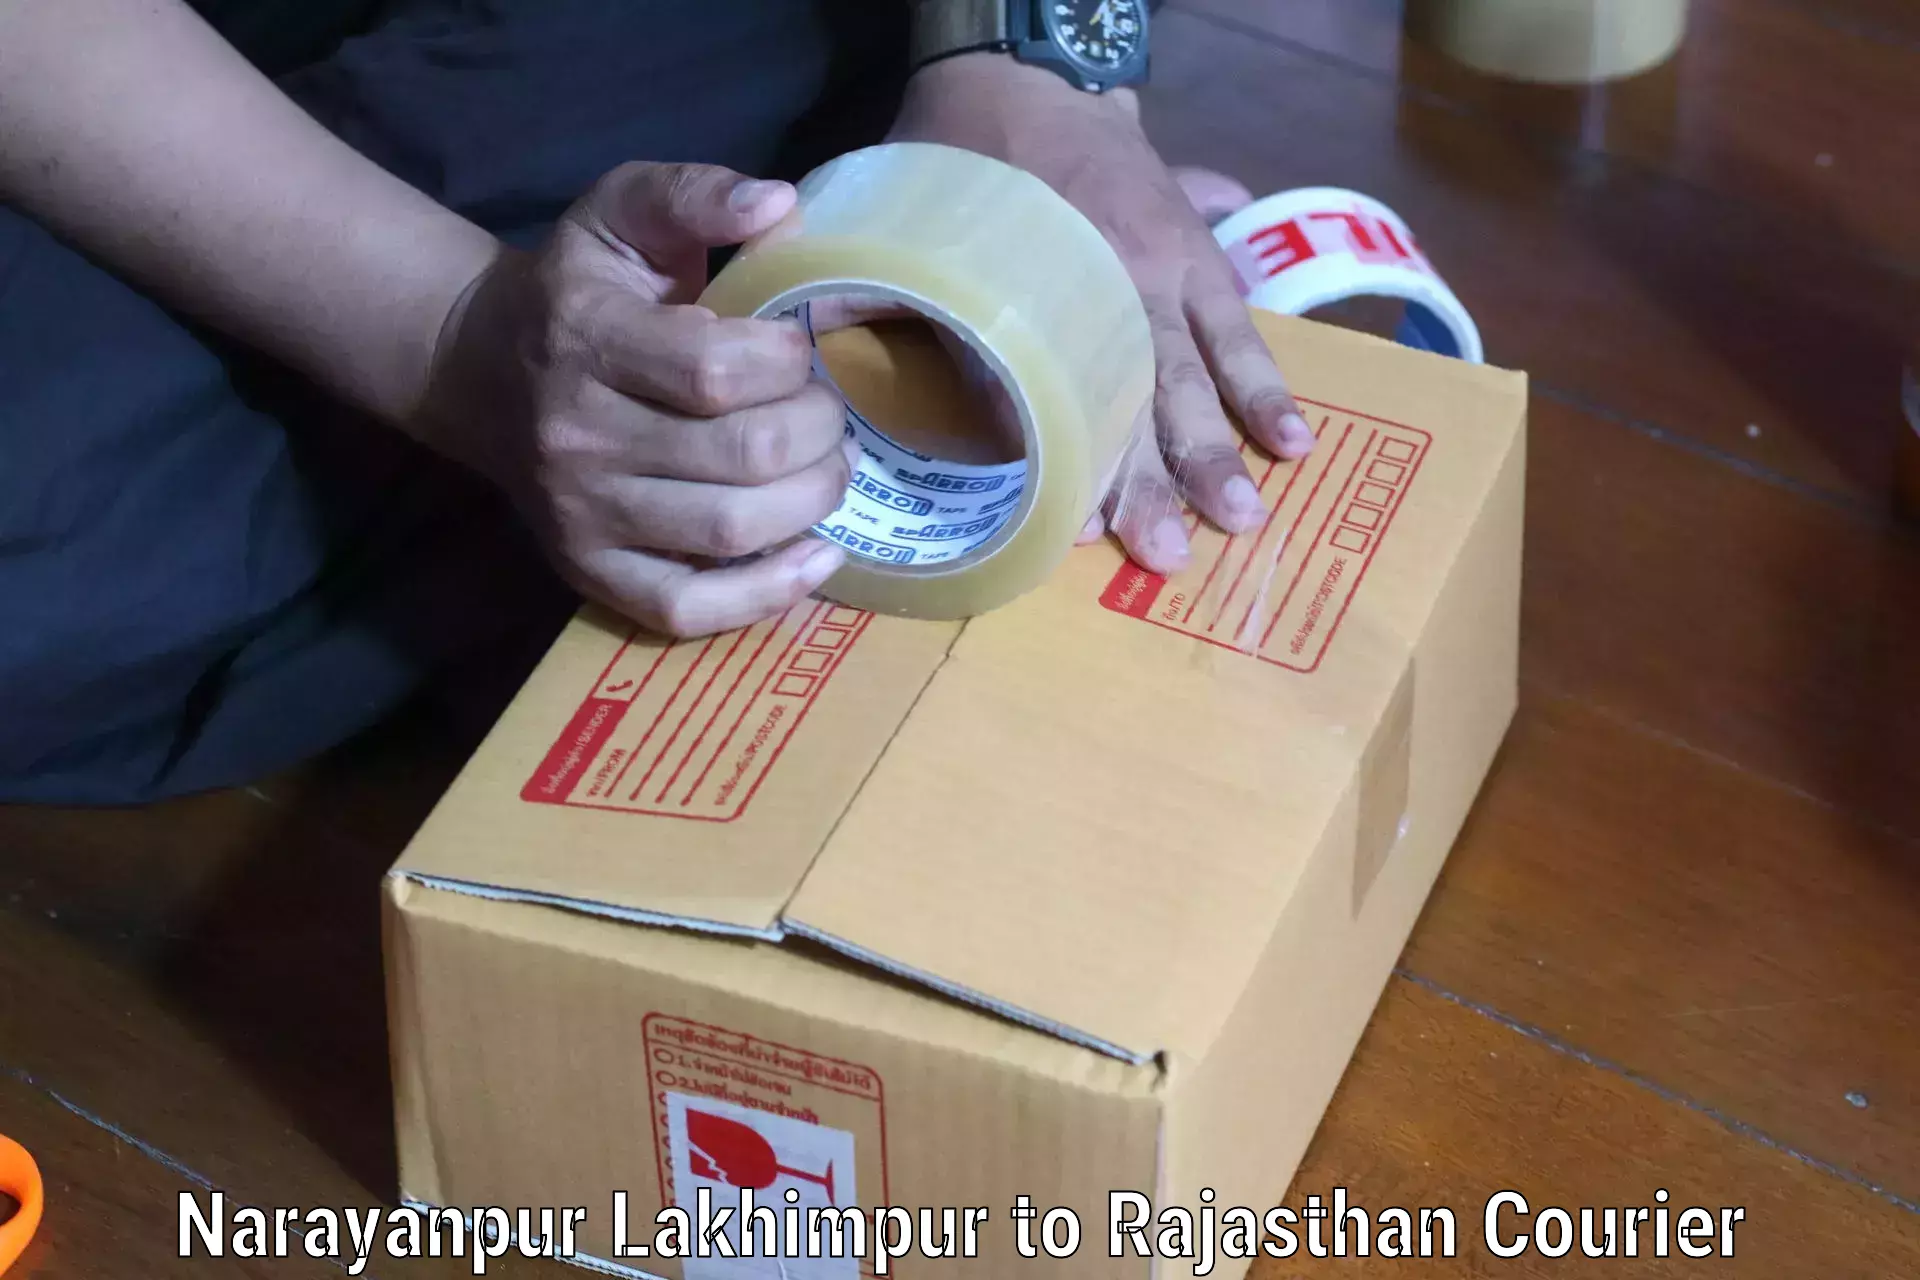 Bulk courier orders Narayanpur Lakhimpur to Nainwa